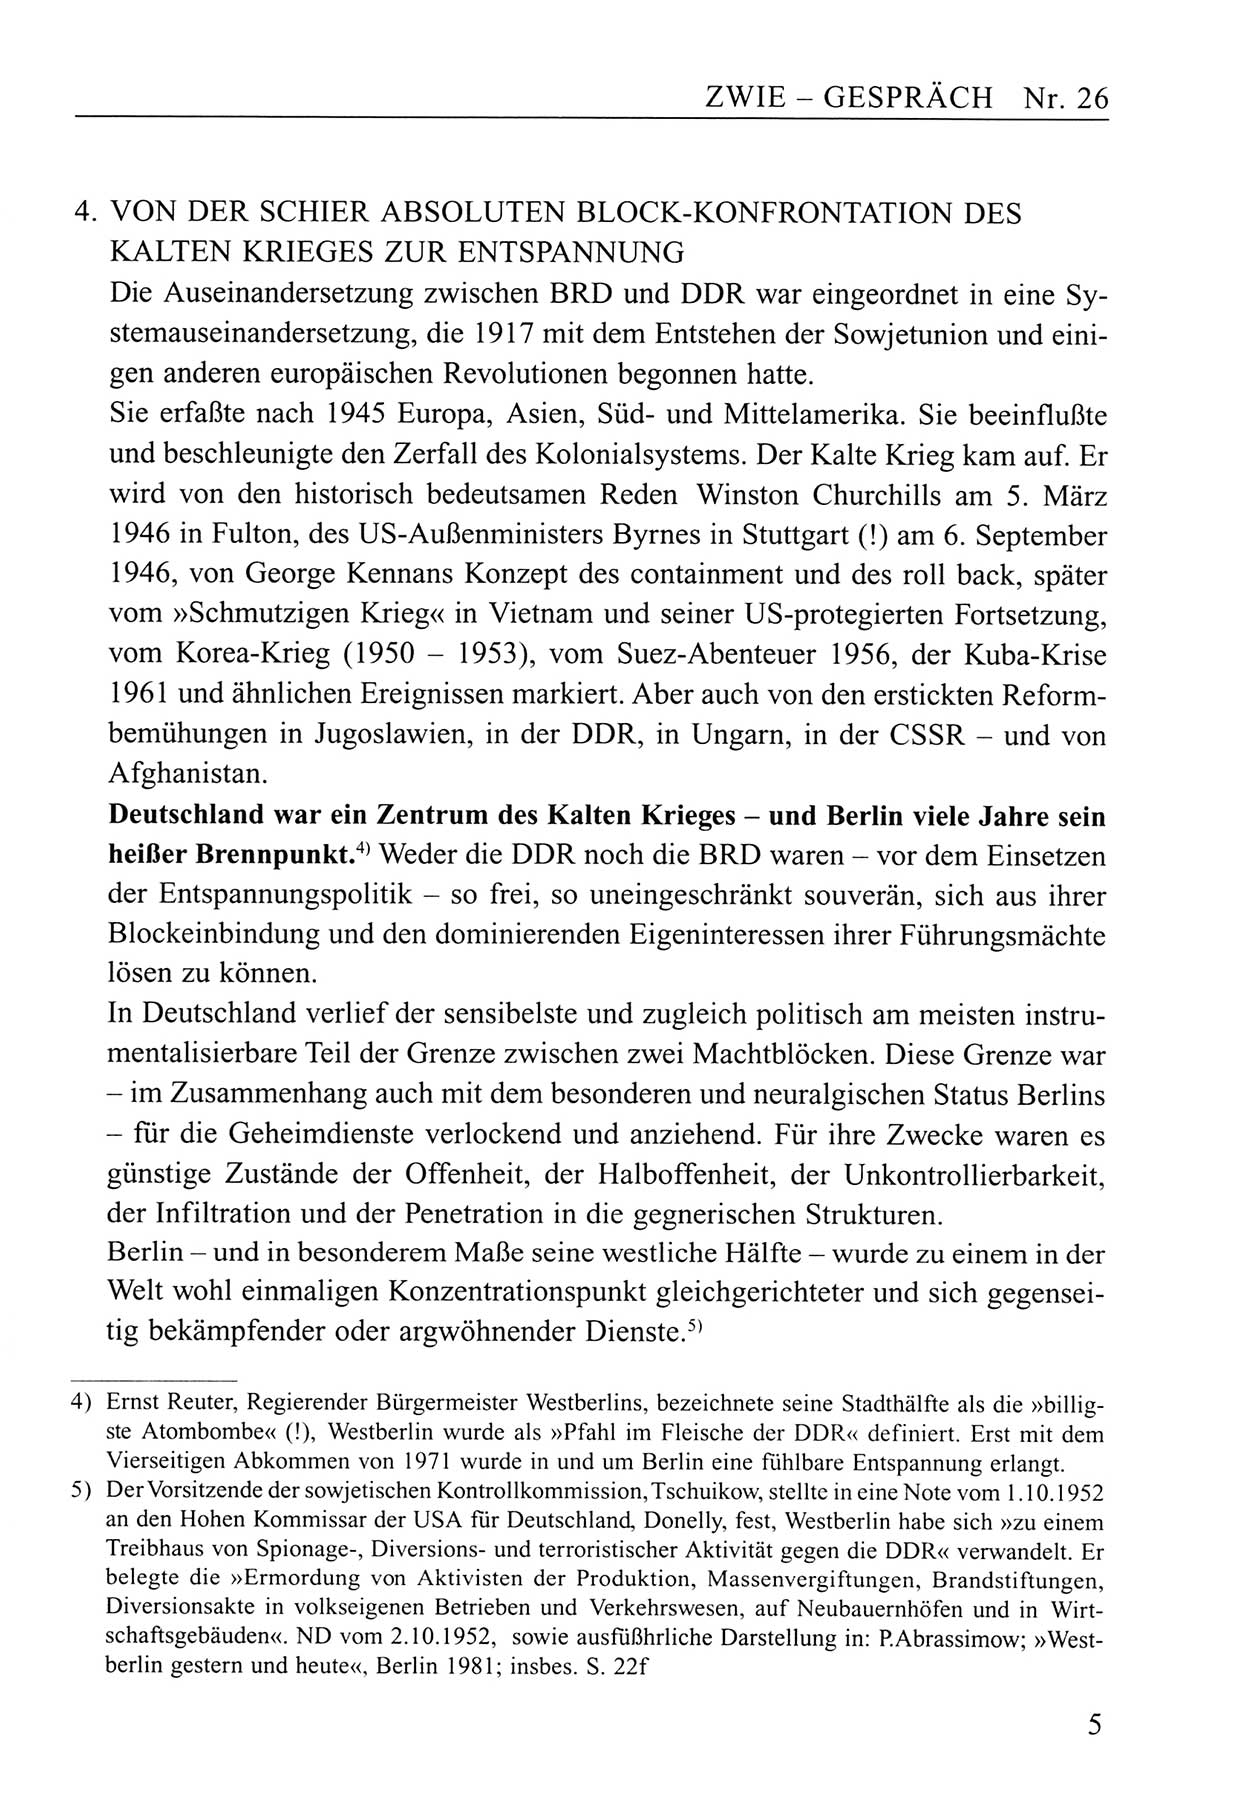 Zwie-Gespräch, Beiträge zum Umgang mit der Staatssicherheits-Vergangenheit [Deutsche Demokratische Republik (DDR)], Ausgabe Nr. 26, Berlin 1995, Seite 5 (Zwie-Gespr. Ausg. 26 1995, S. 5)